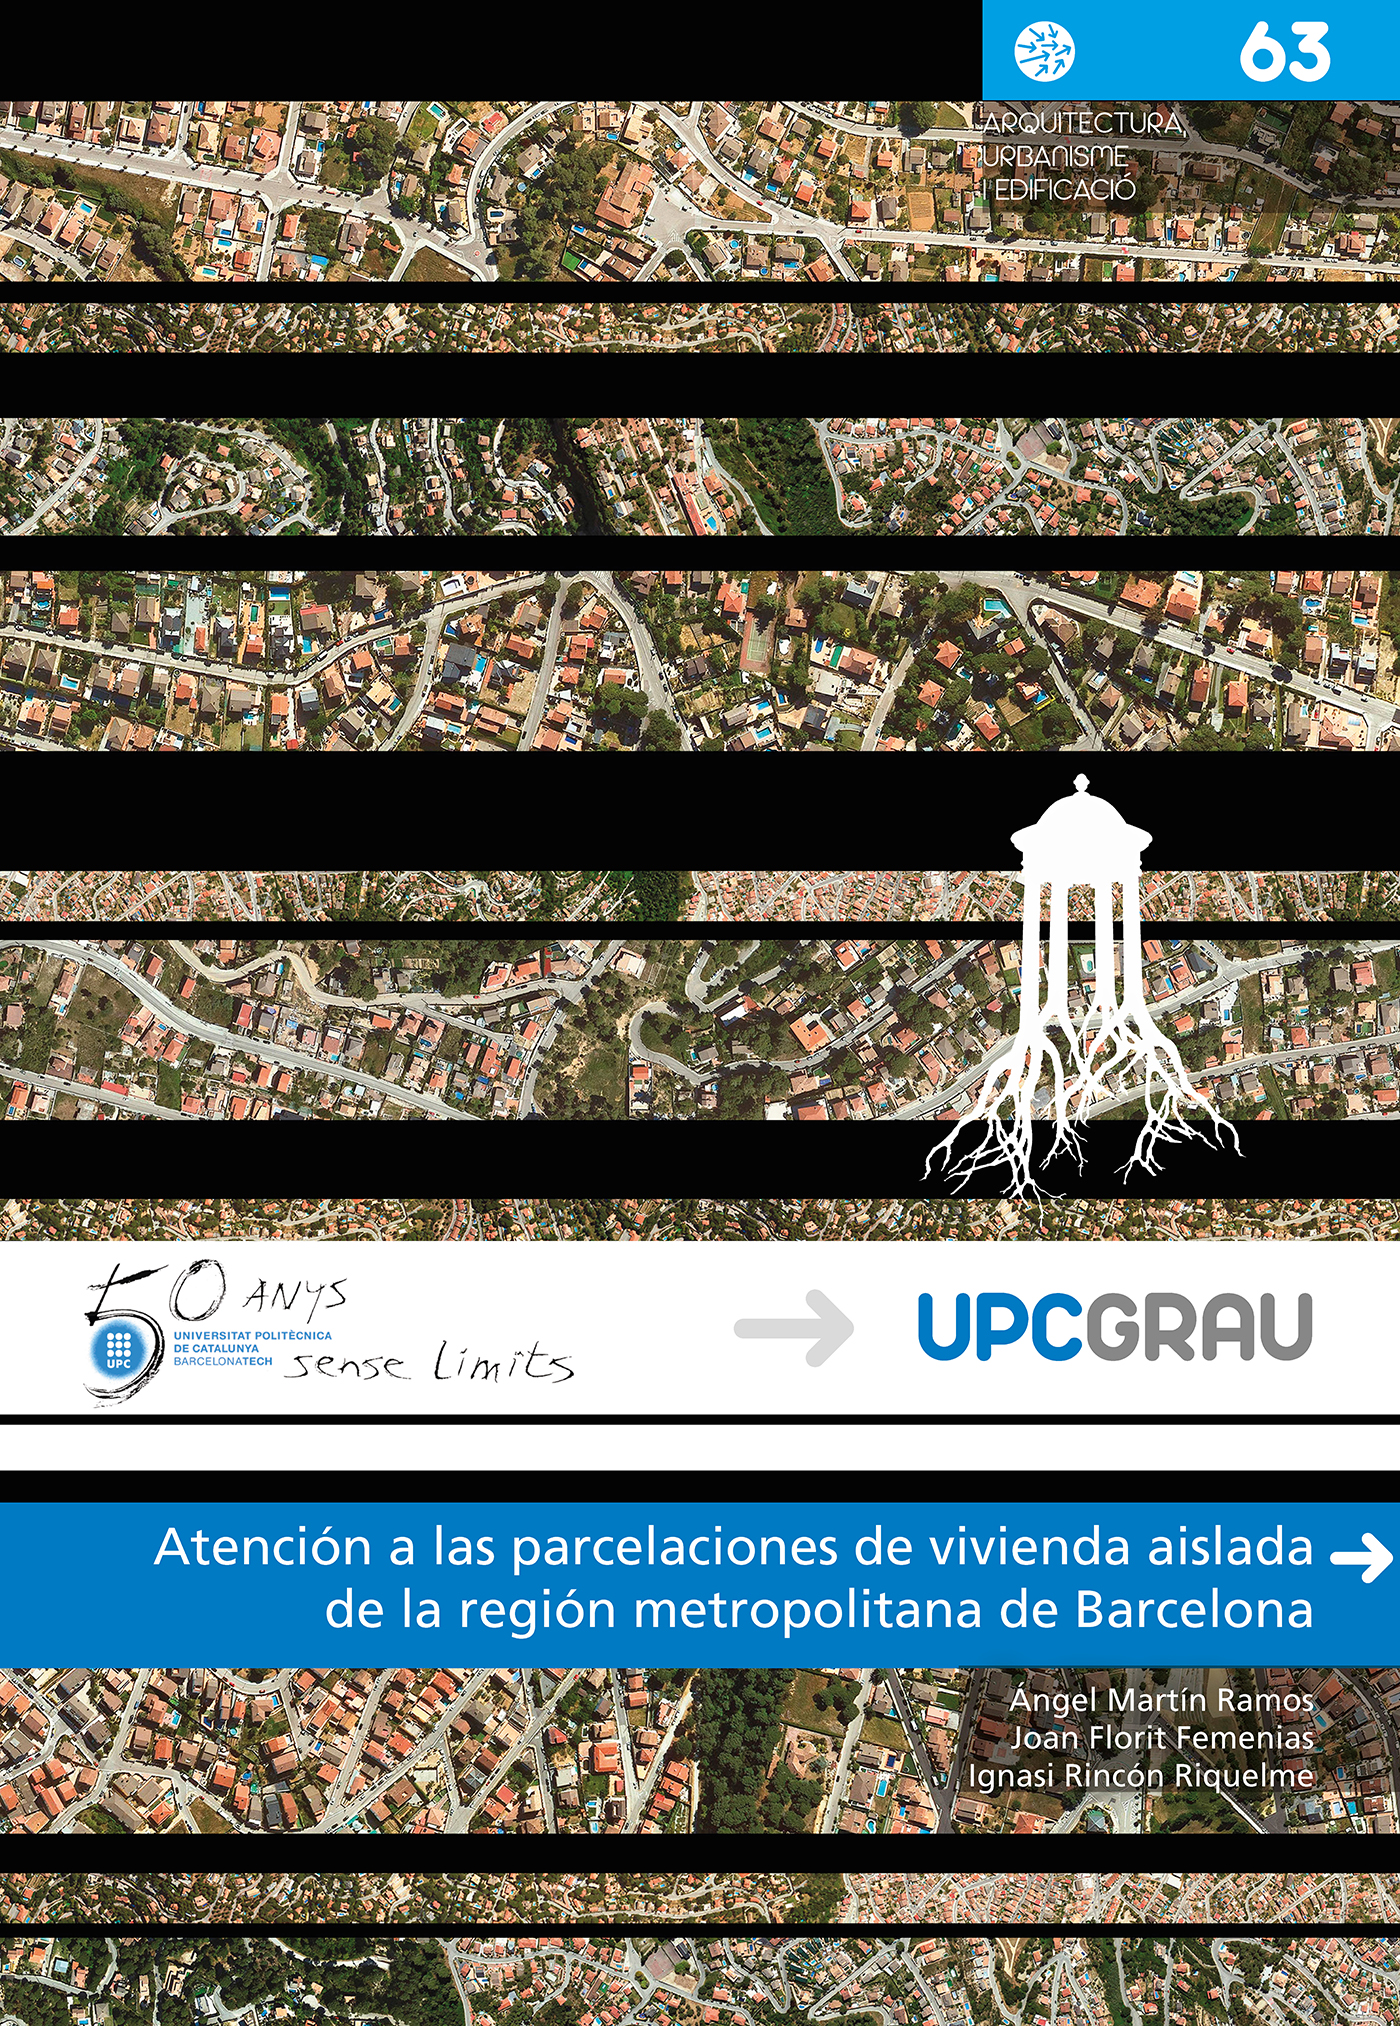 AtenciÃ³n a las parcelaciones de vivienda aislada de la regiÃ³n metropolitana de Barcelona